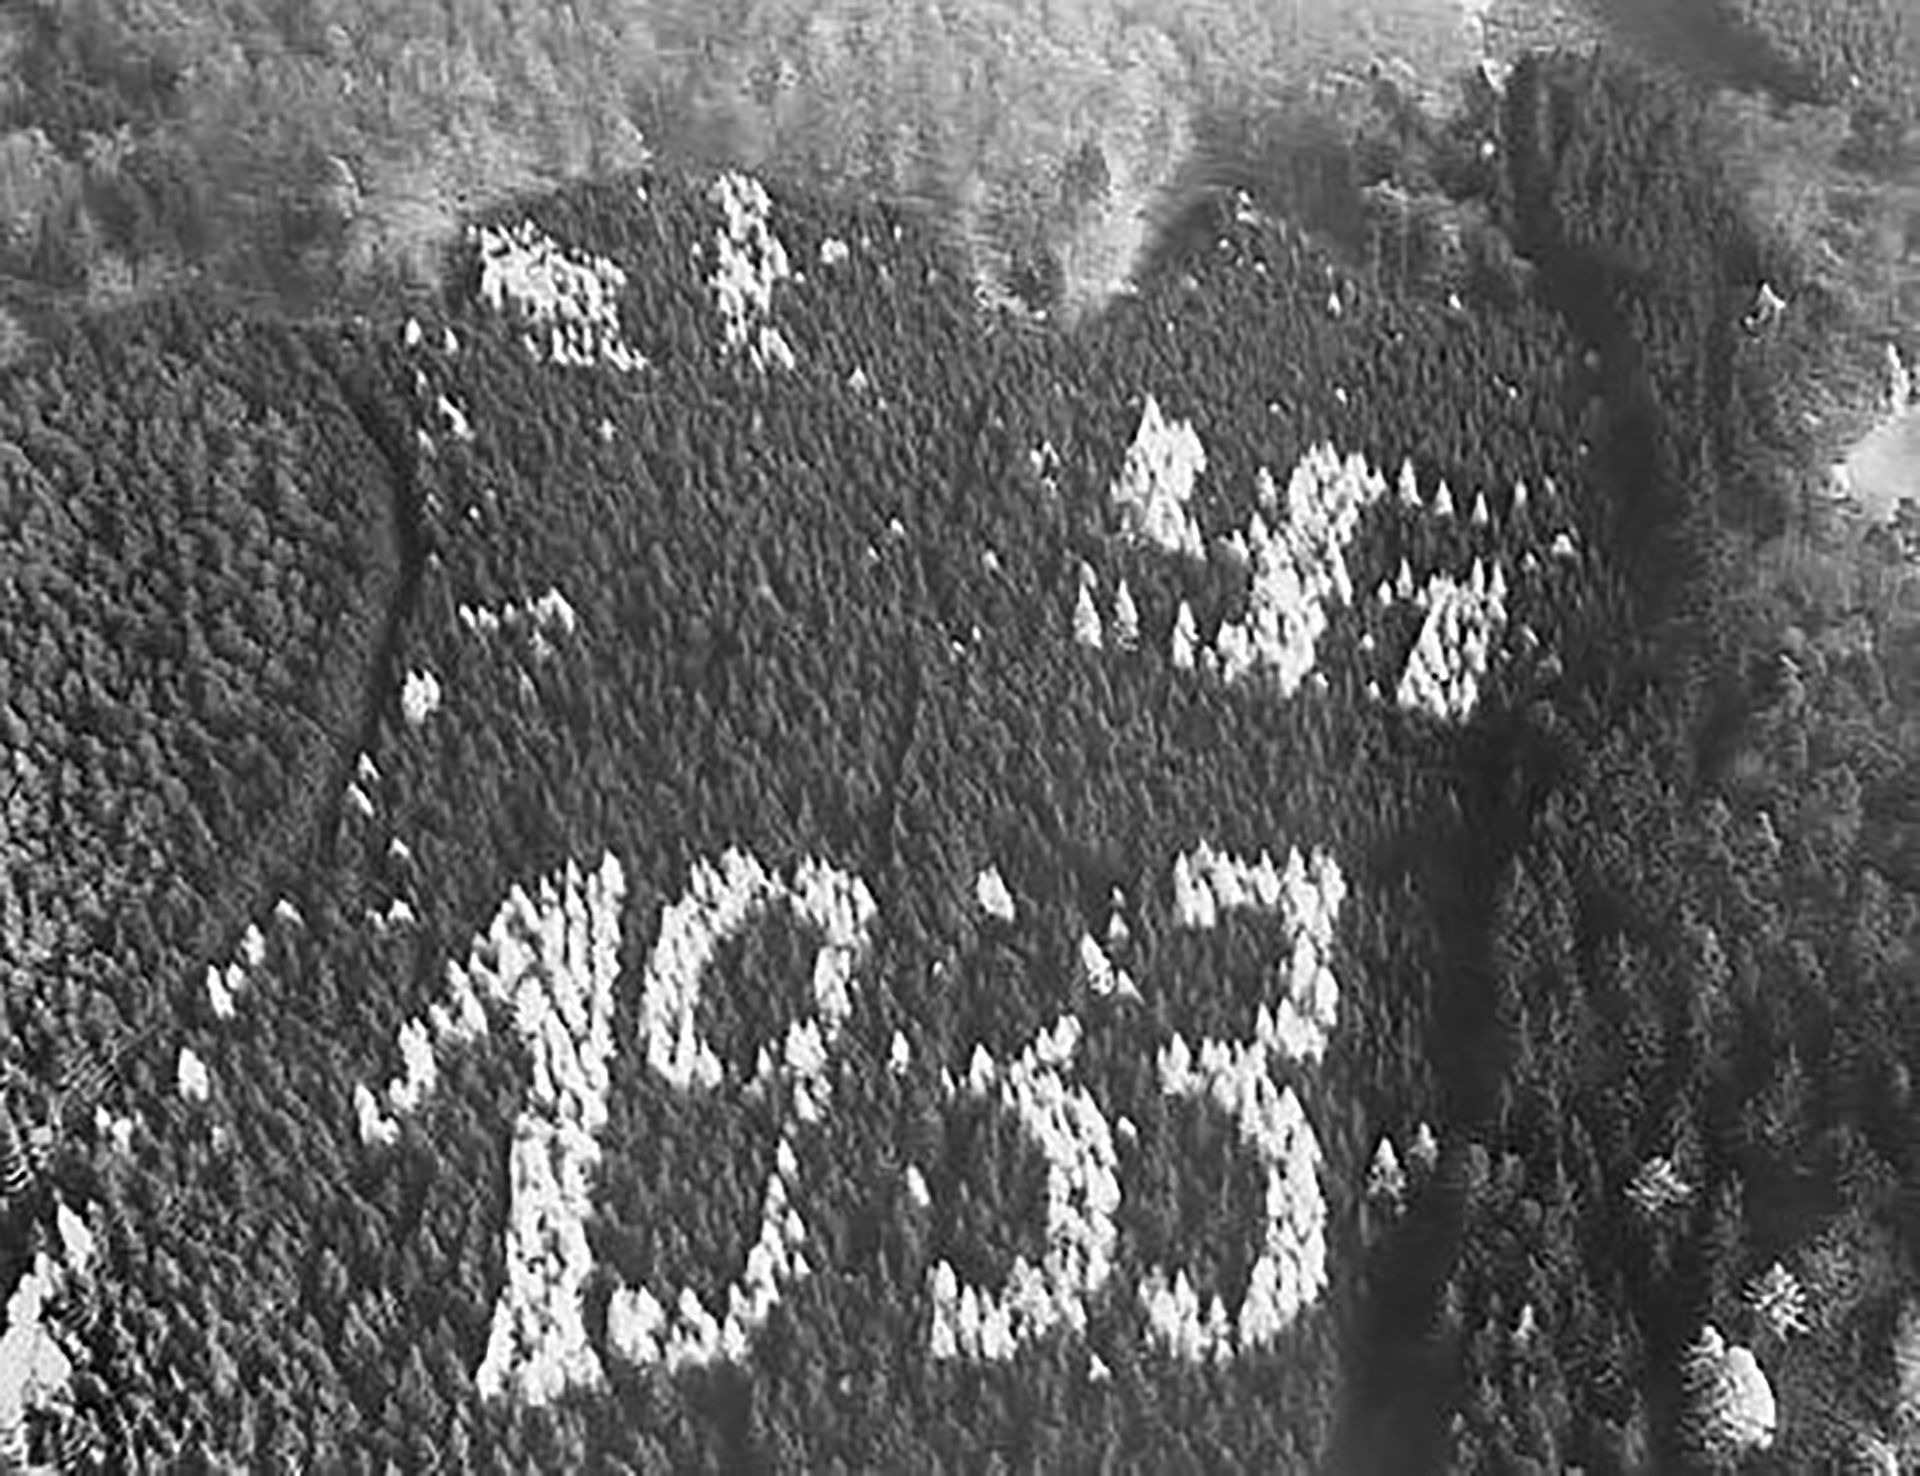 En 1933 en Asterode, Hesse, Alemania, un guardabosques descubrió un "1933" plantado con alerces y una esvástica en la ladera sur de un bosque de abetos. La monstruosidad se mantuvo sin cambios hasta que los ocupantes estadounidenses se quejaron ante el gobierno estatal en la década de 1960 cuando vieron los símbolos durante los vuelos de reconocimiento